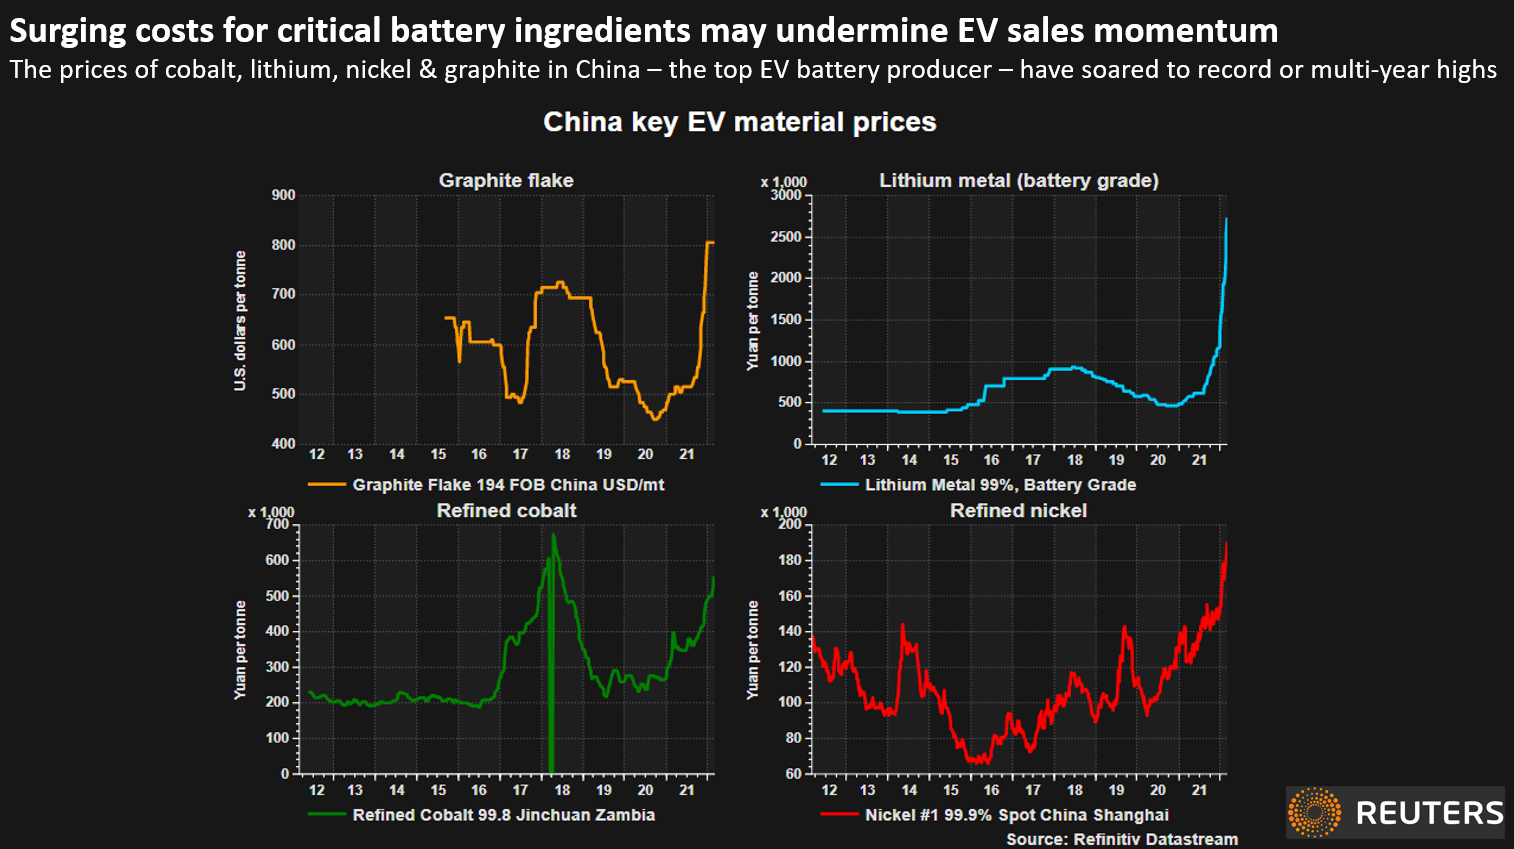 Los costos crecientes de los ingredientes críticos de la batería pueden socavar el impulso de las ventas de vehículos eléctricos